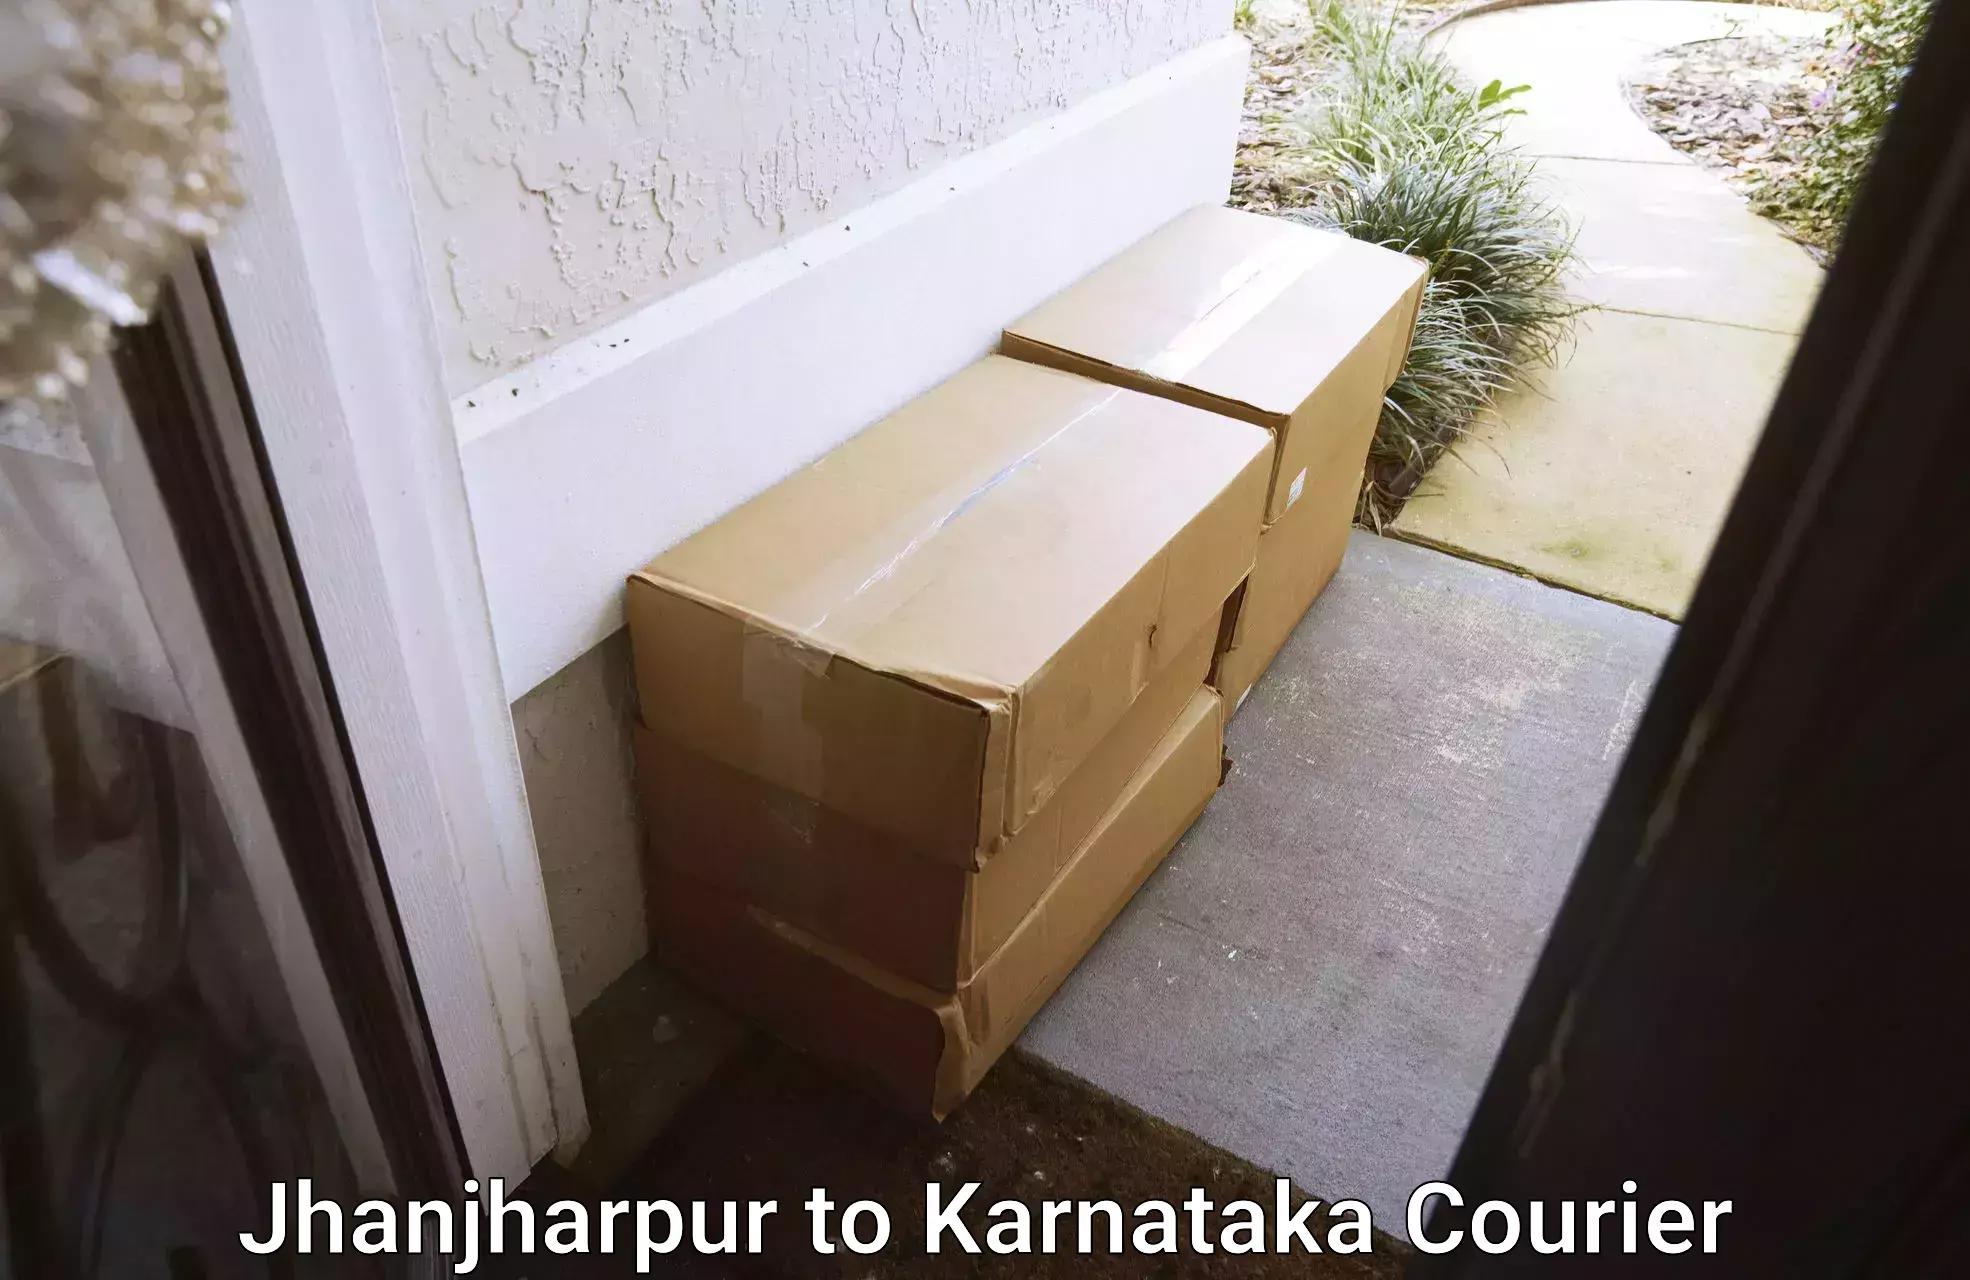 Door-to-door relocation services Jhanjharpur to Karnataka